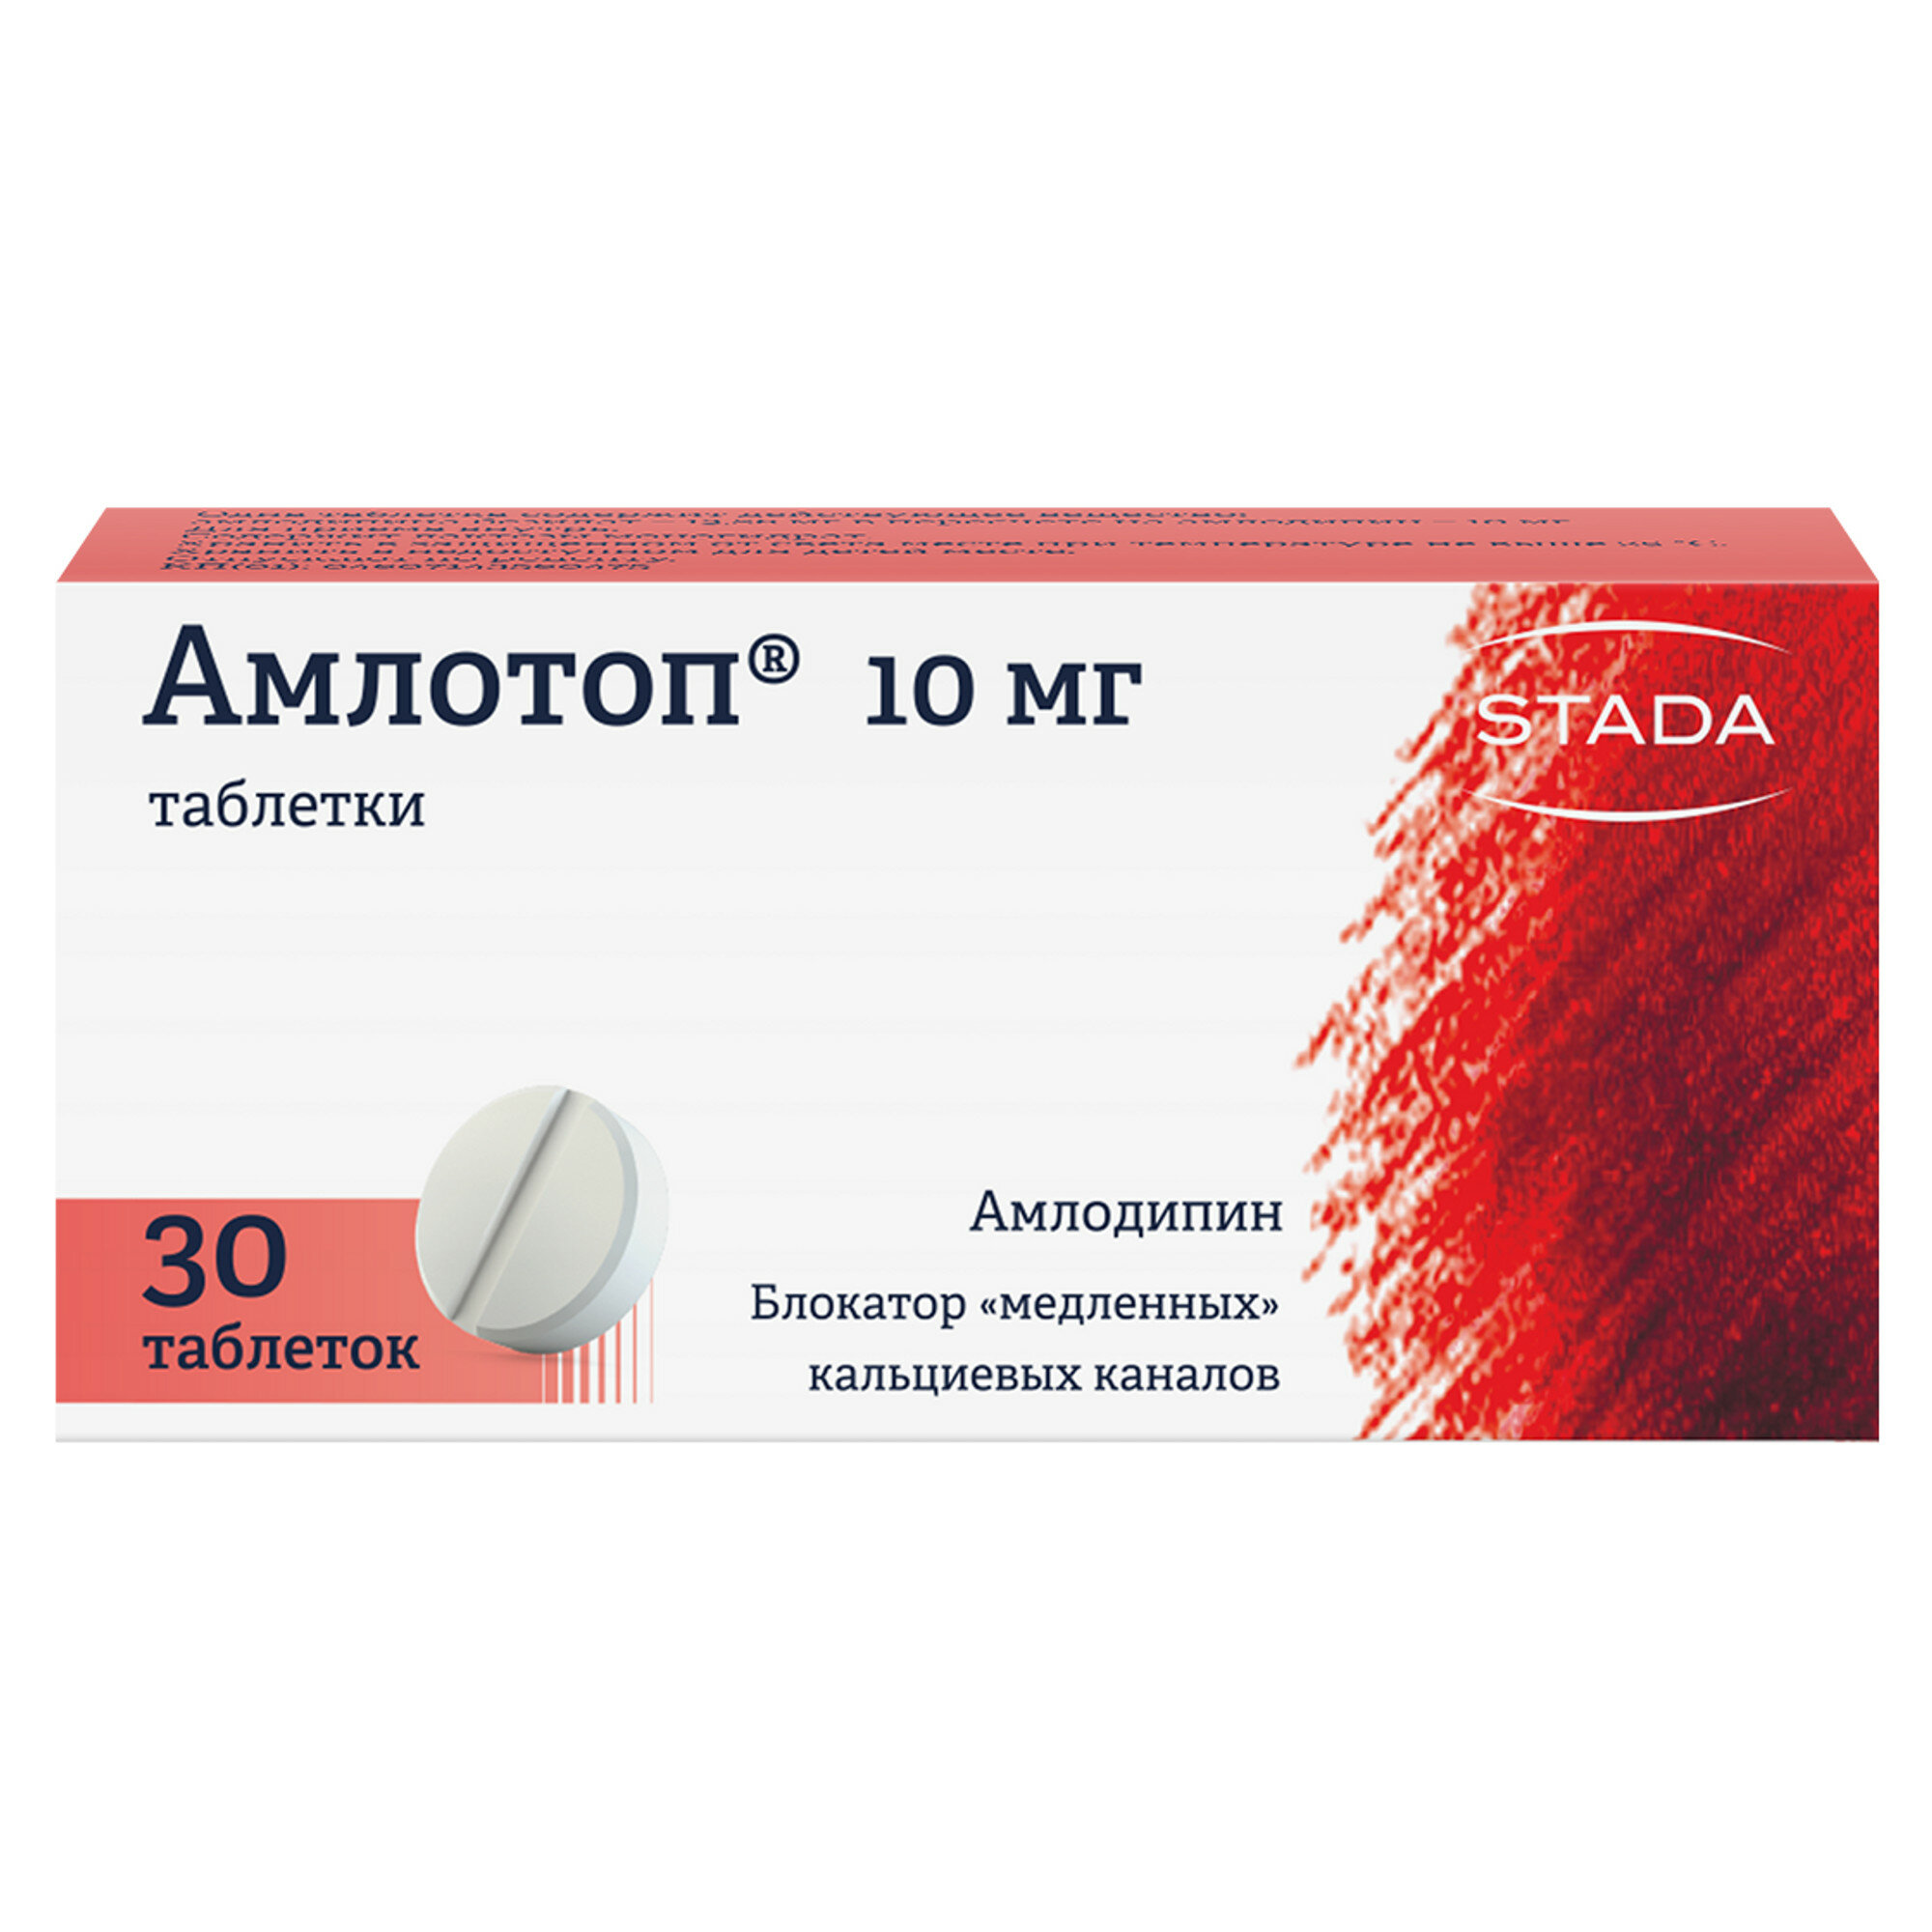 Амлотоп, таблетки 10 мг, 30 шт.